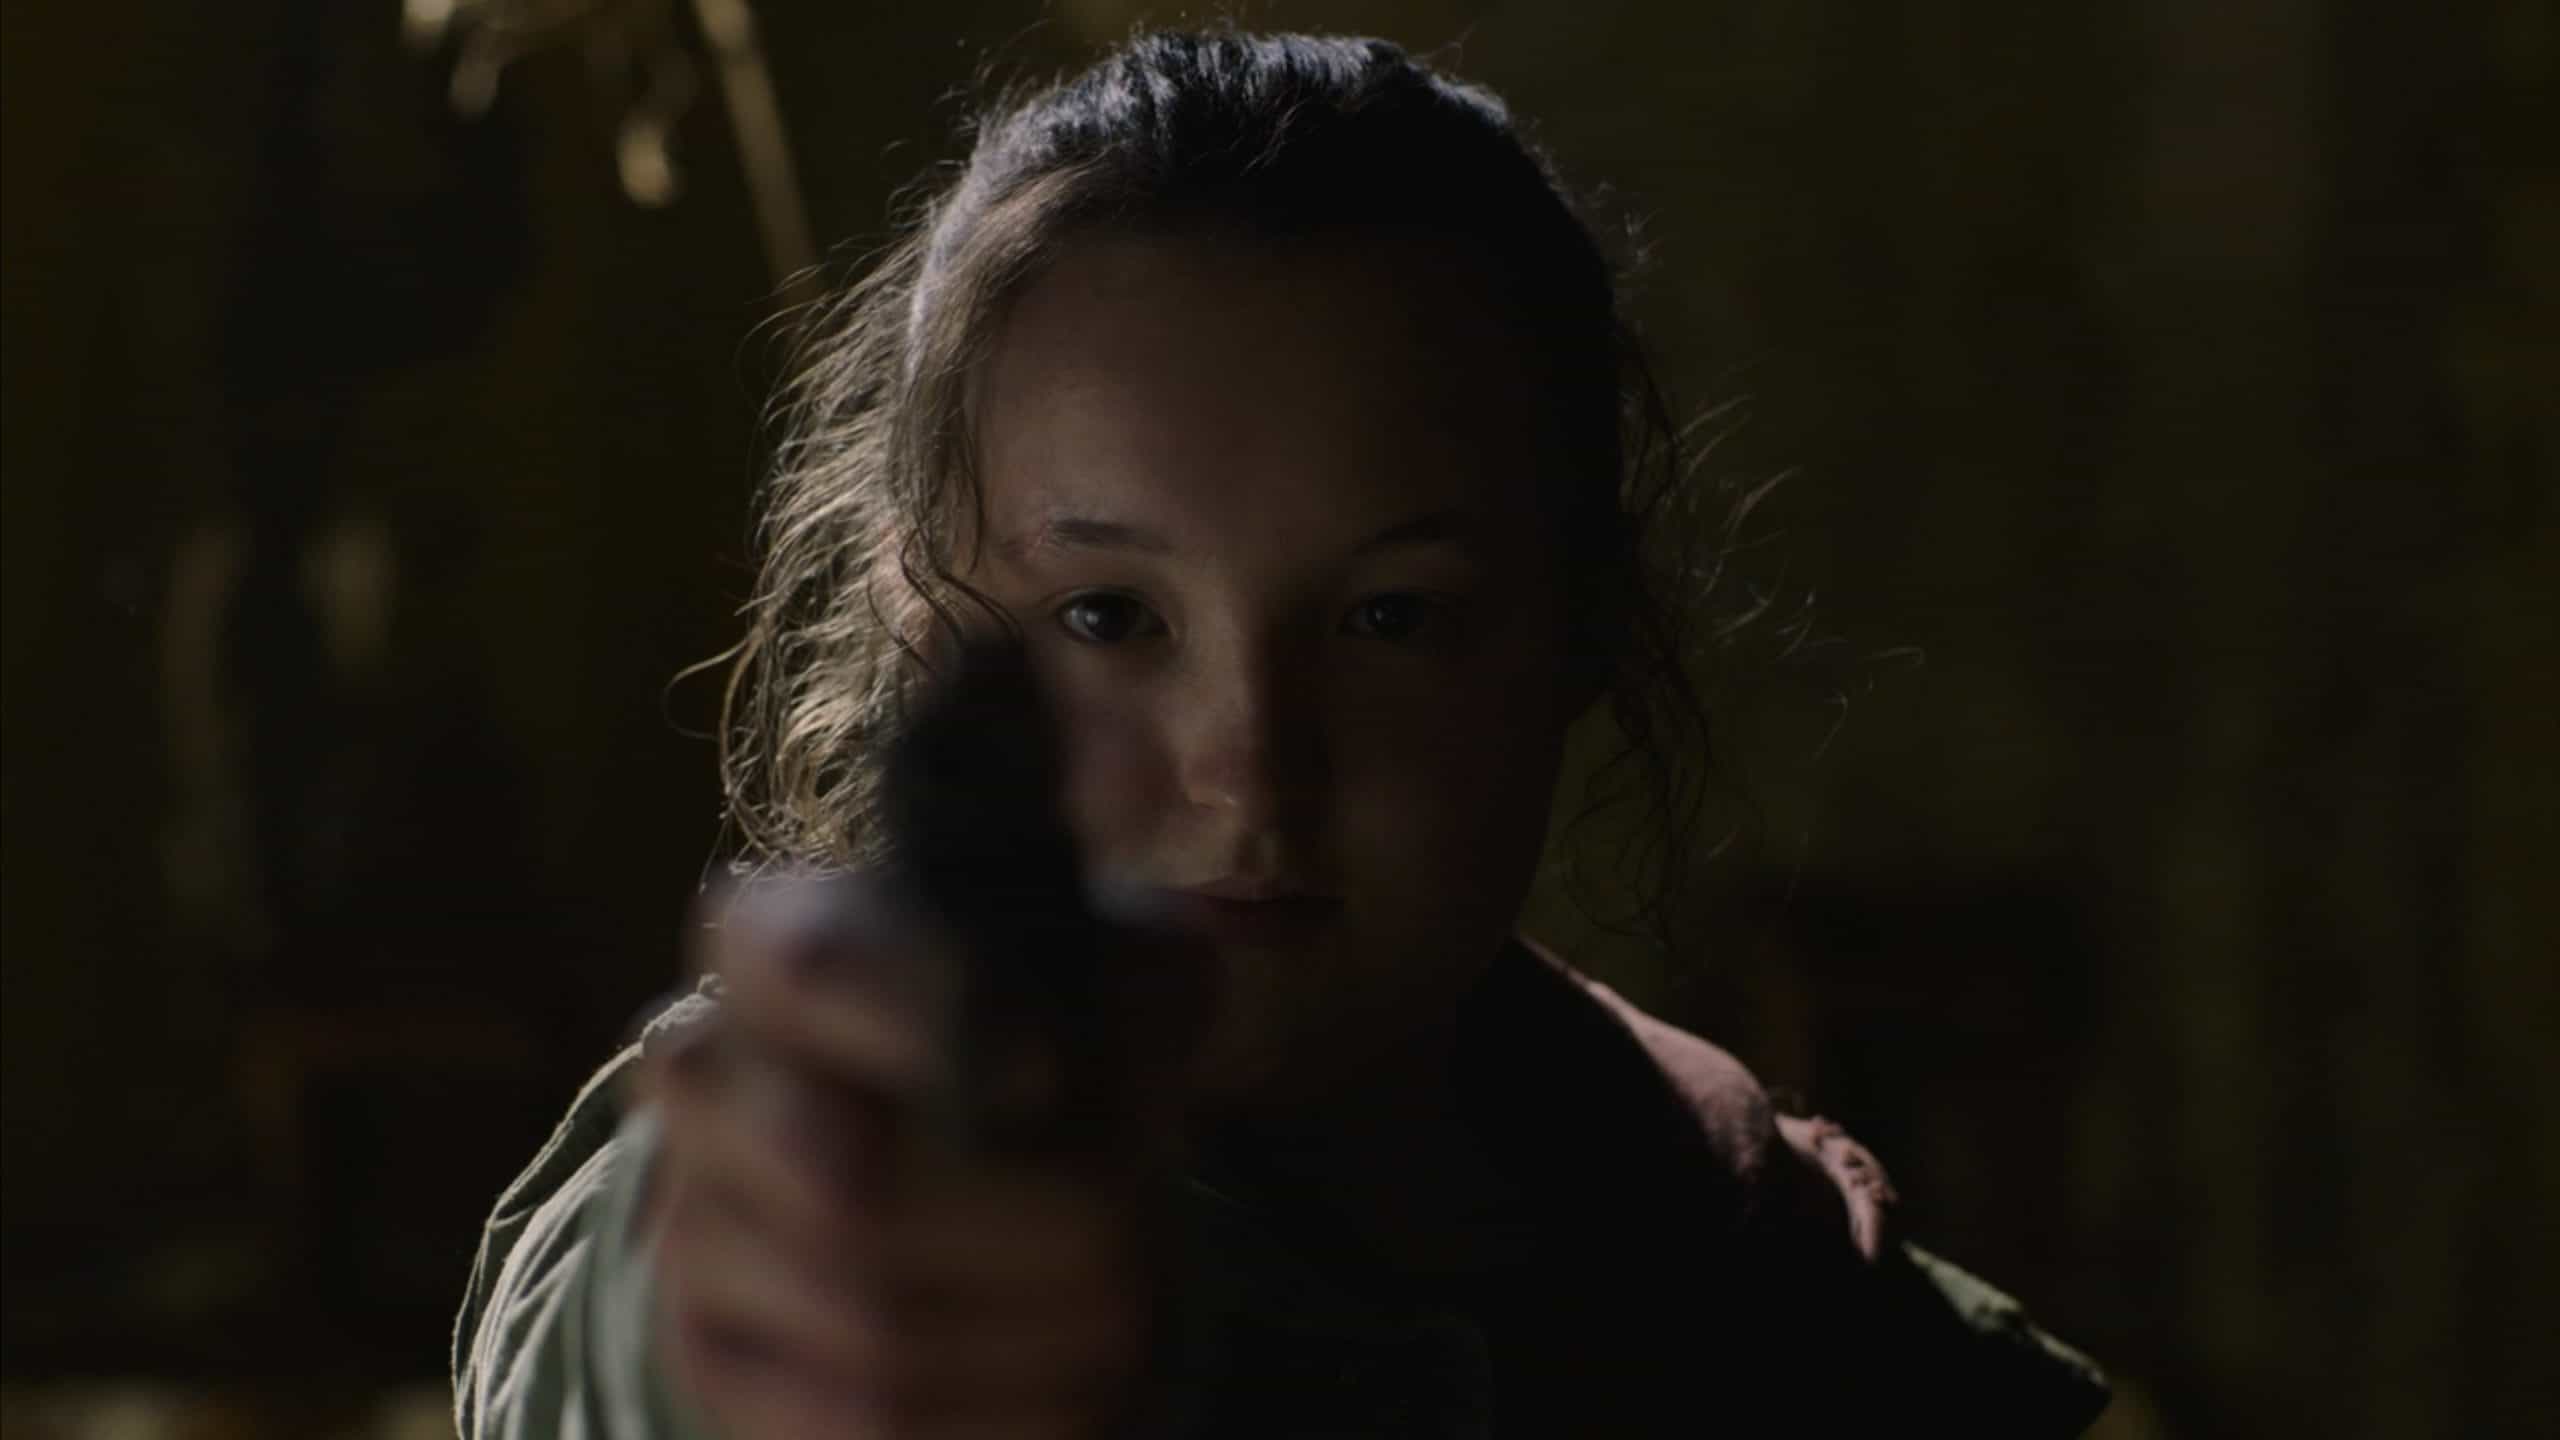 Bella Ramsey as Ellie holding a gun towards a mirror